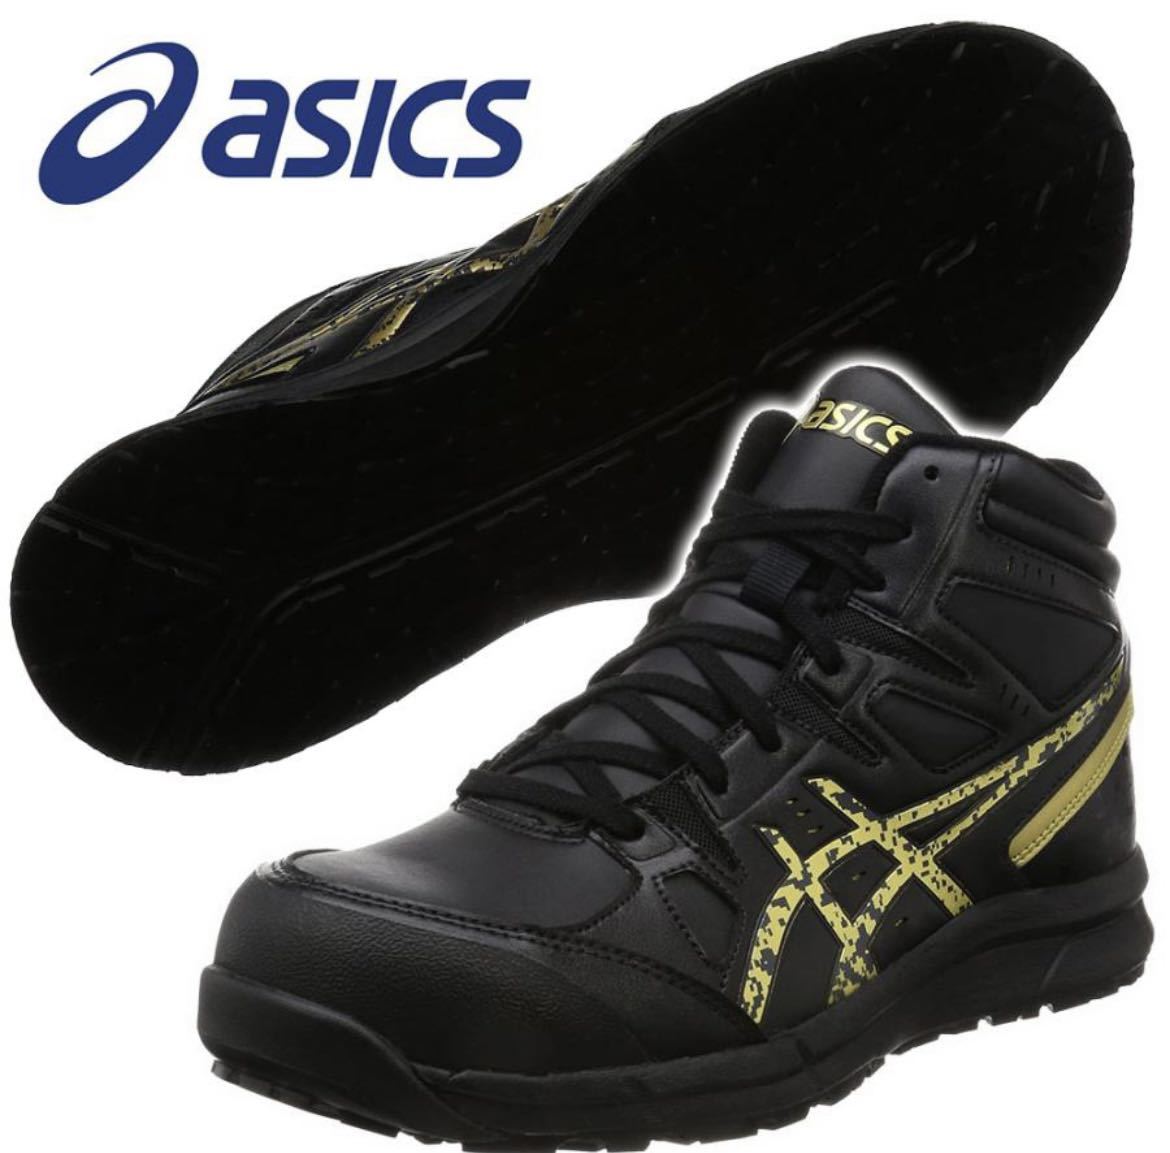 新品未使用 アシックス 安全靴 ウィンジョブ CP105 26cm asics 作業靴 JSAA A種先芯 耐滑ソール αGEL搭載 ブラック 送料無料 送料込み